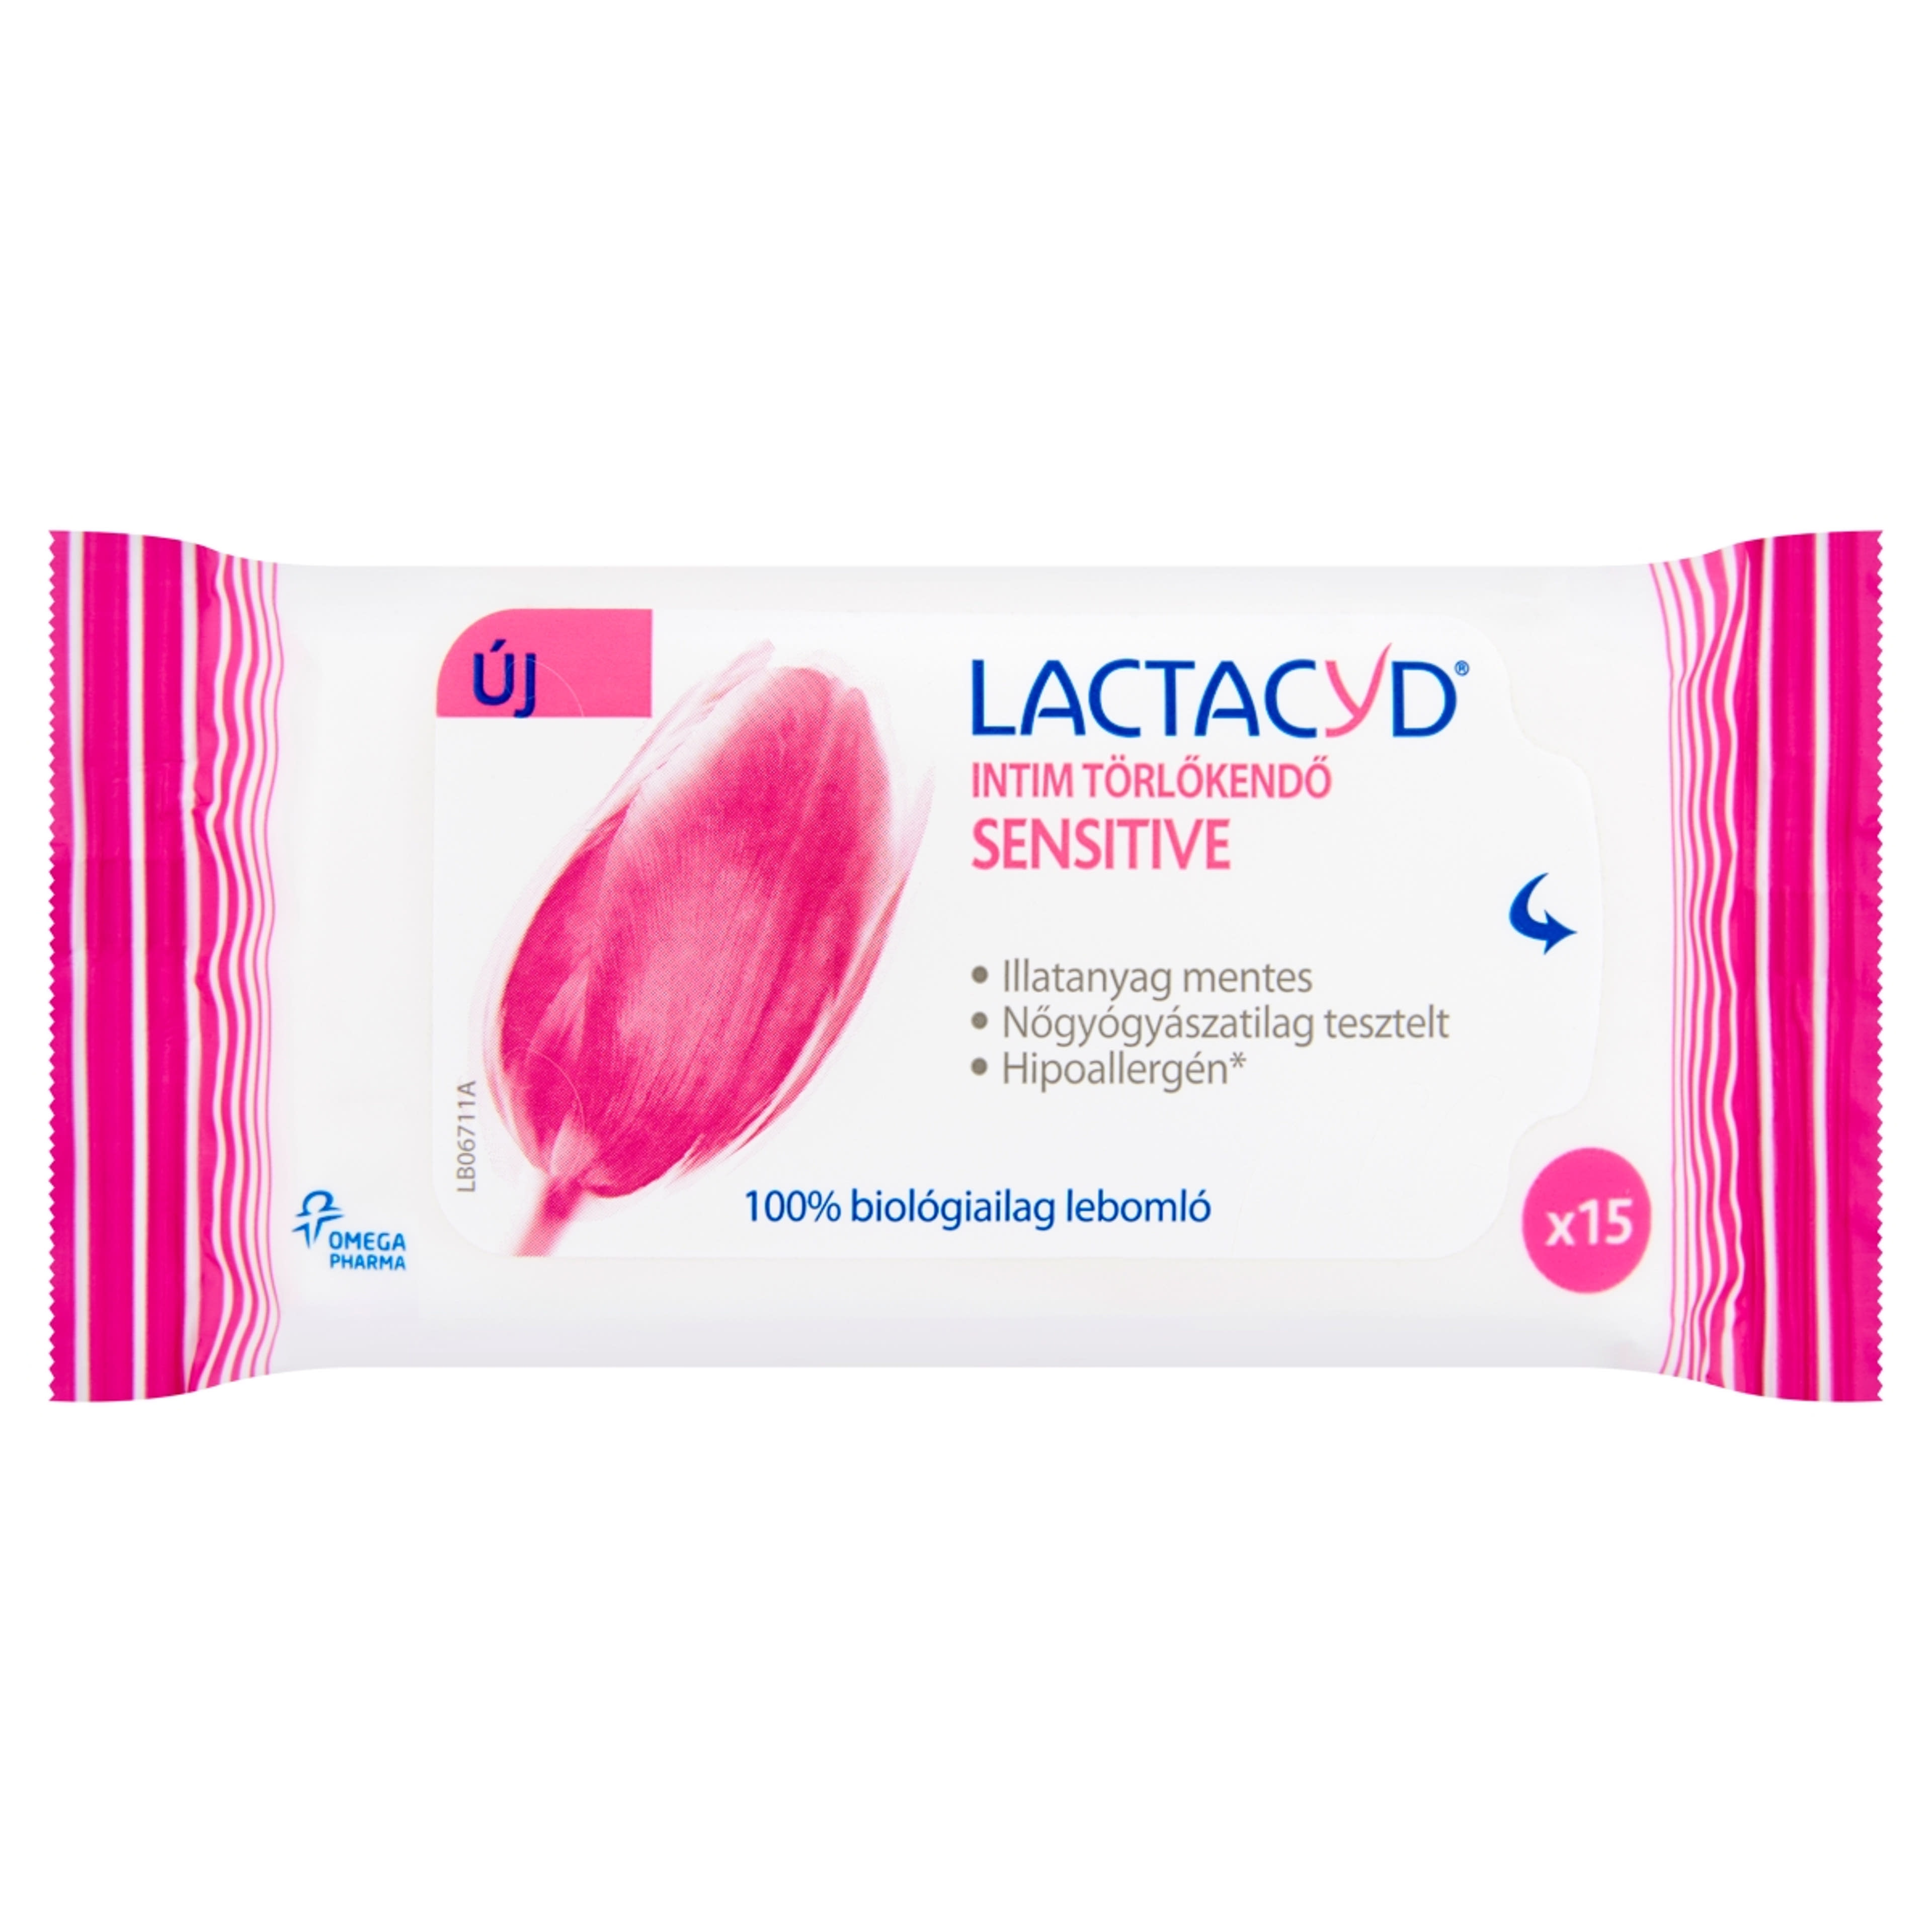 Lactacyd Sensitive intim törlőkendő - 15 db